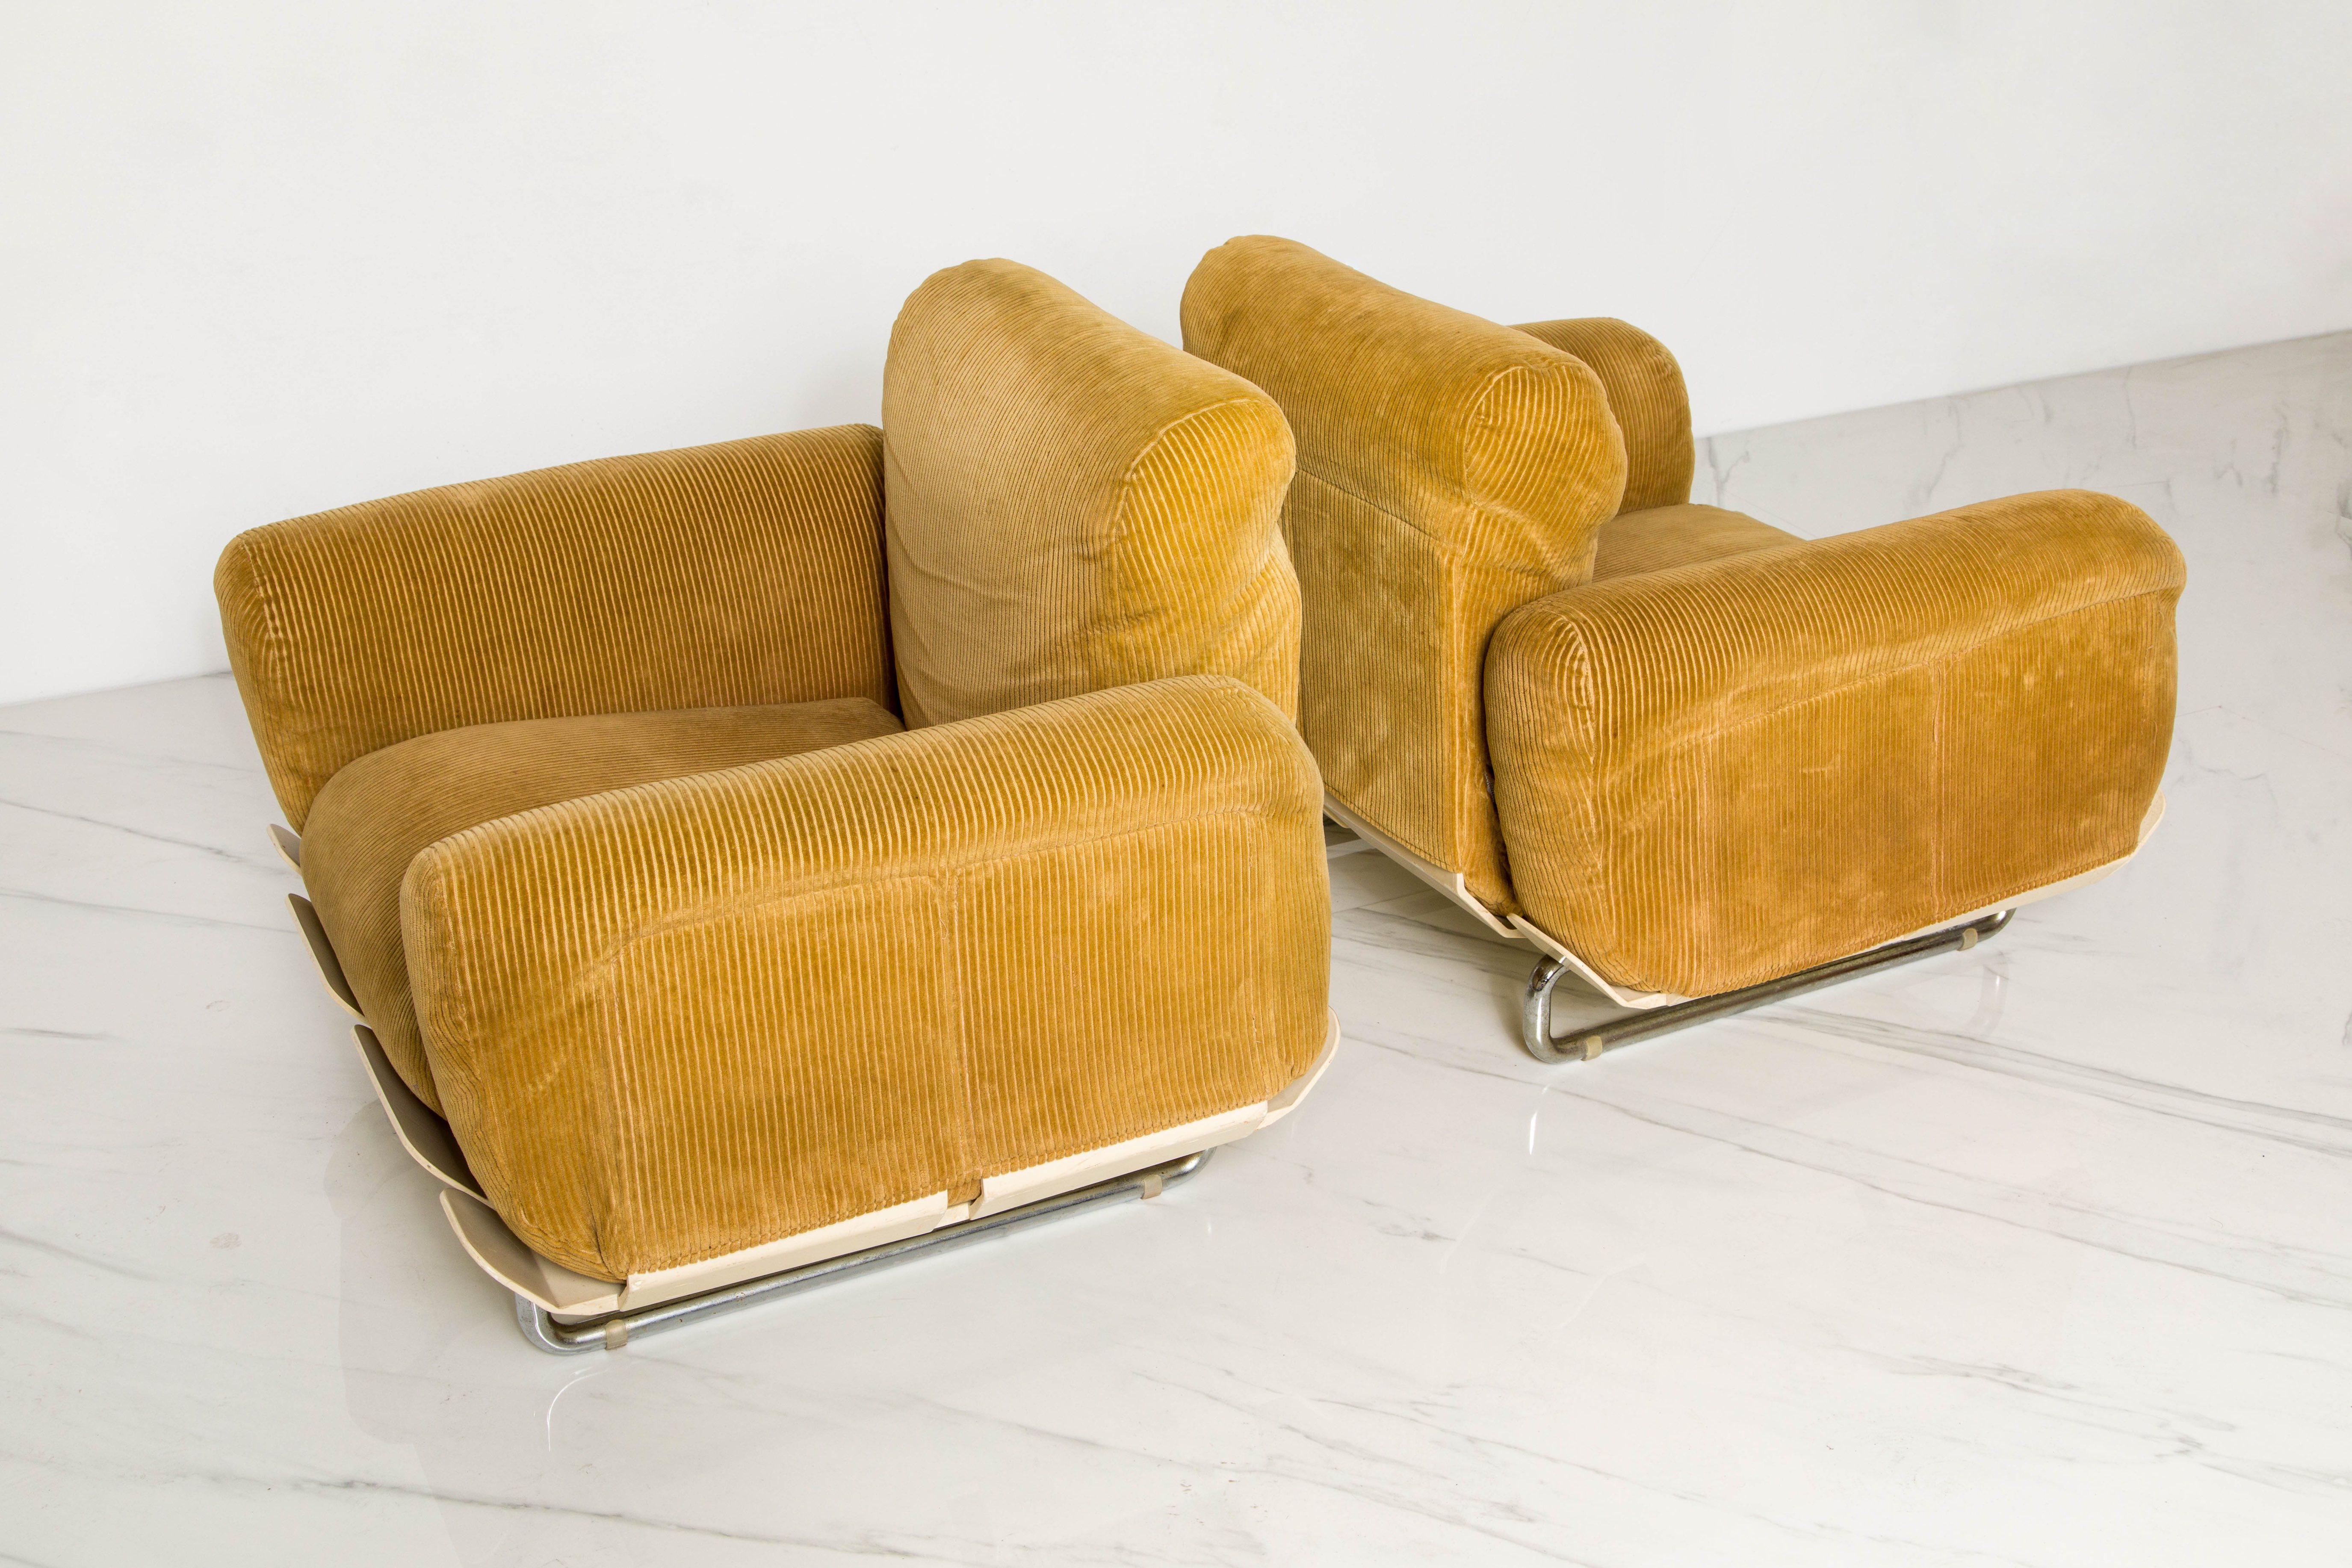 Mid-20th Century Rare 'Senzafine' Lounge Chairs by Eleonore Riva for Zanotta, 1969, Signed